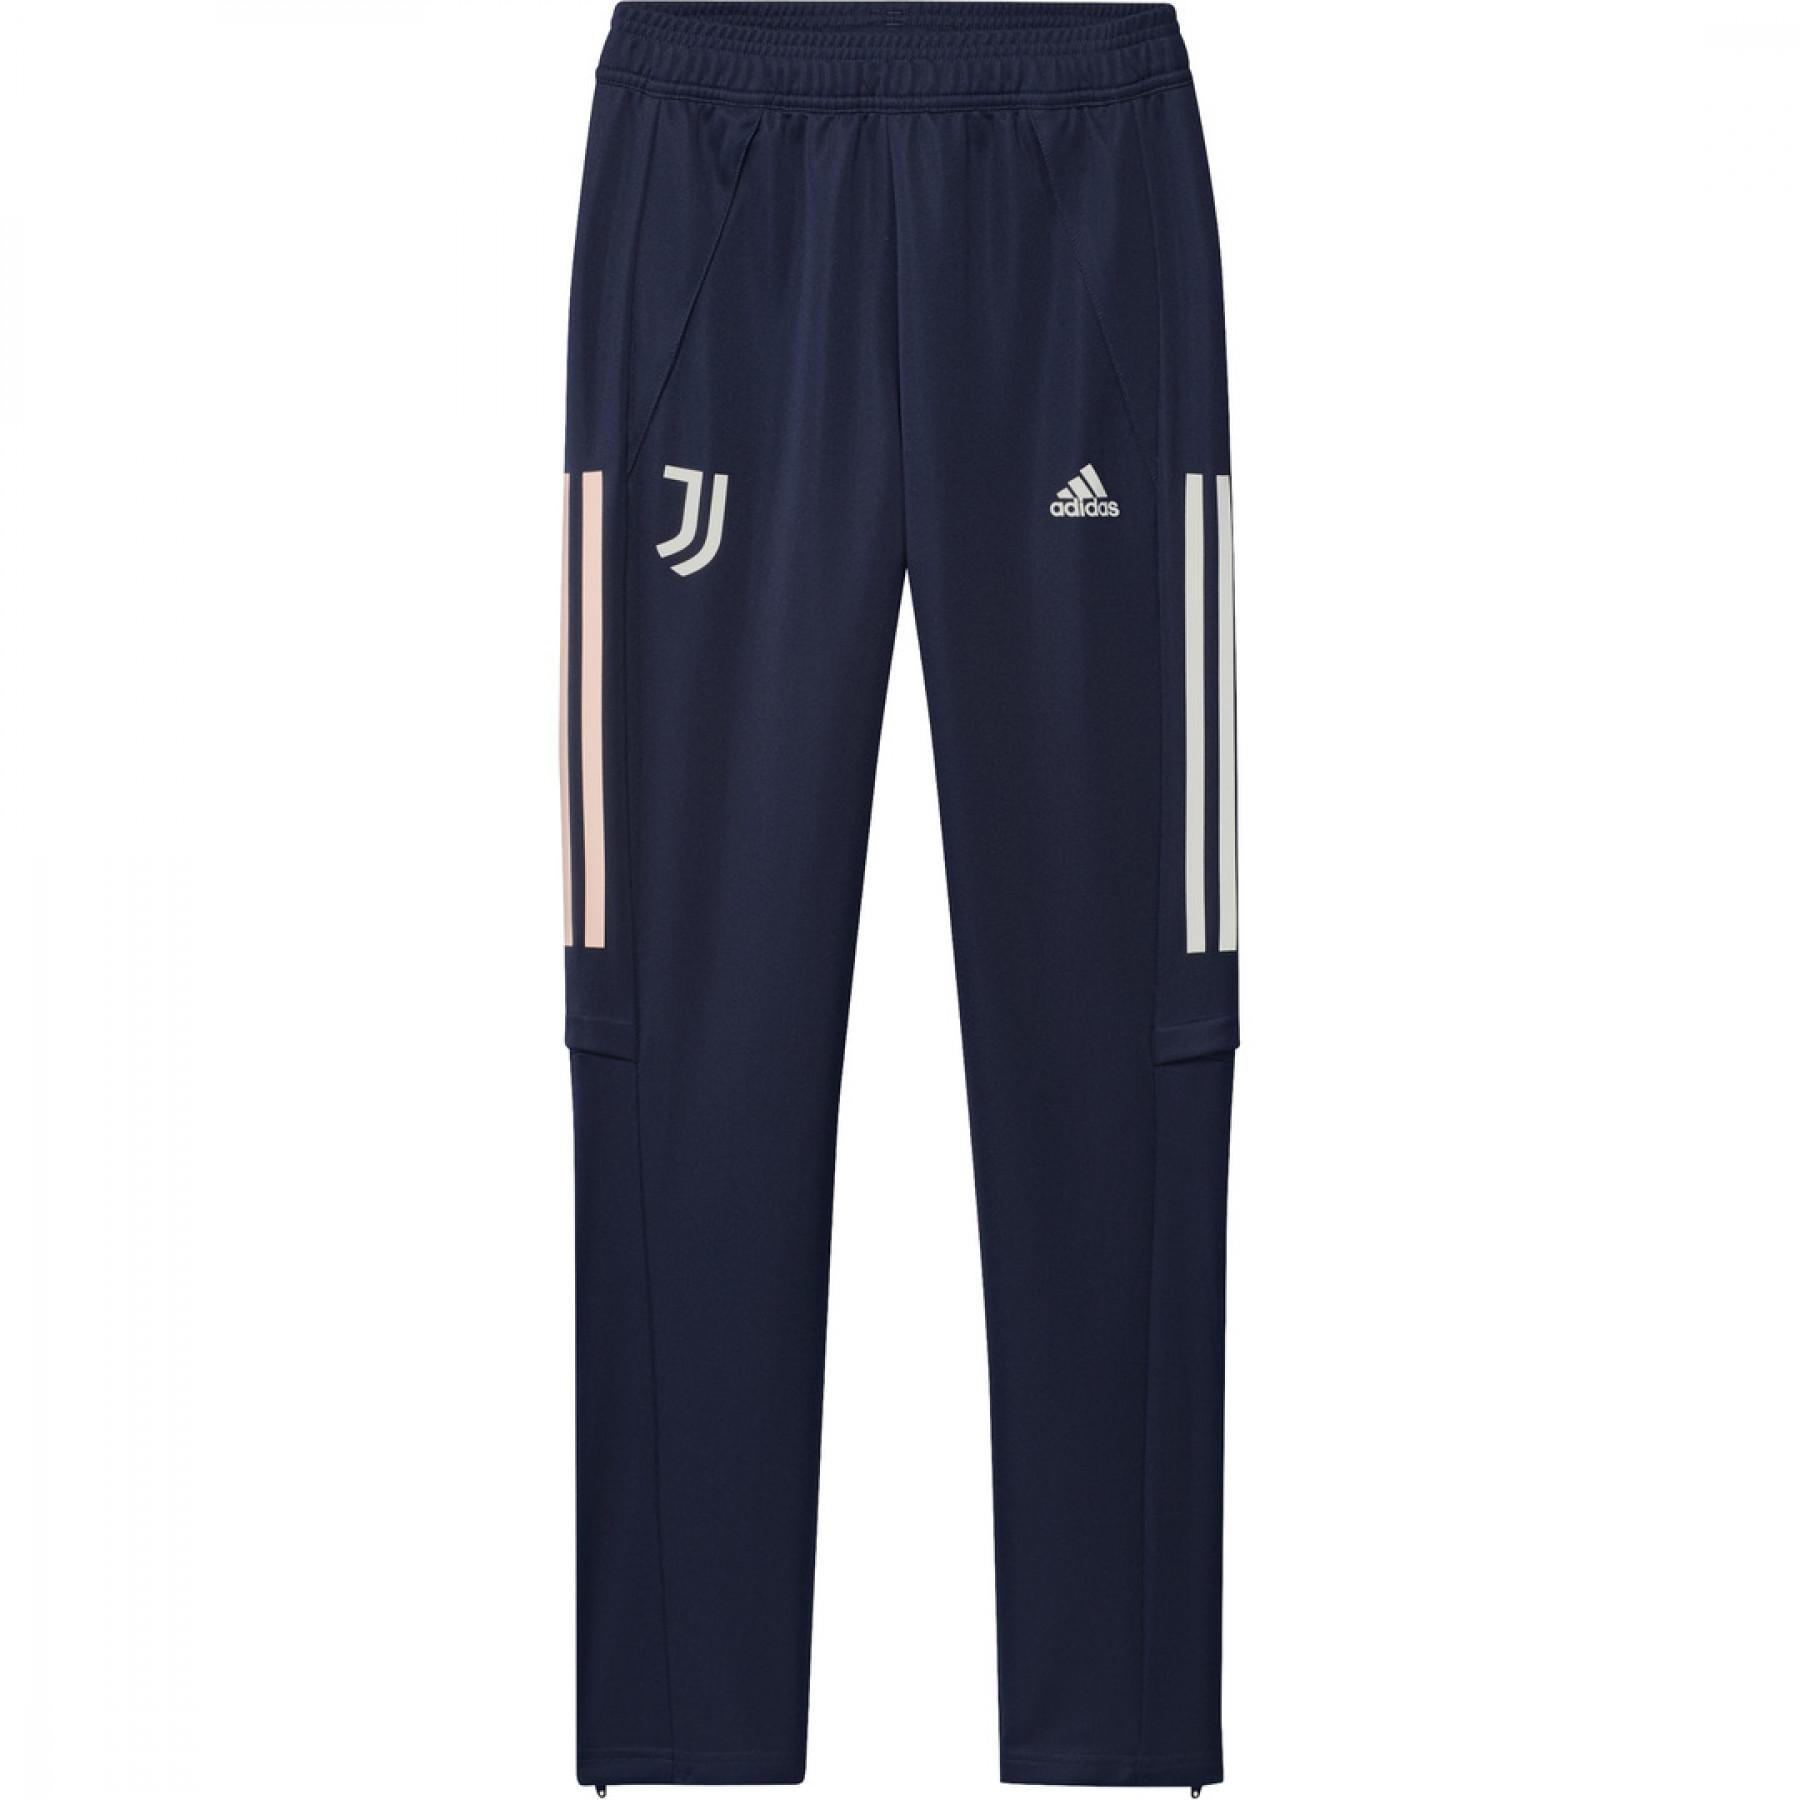 Children's training pants Juventus Turin 2020/21